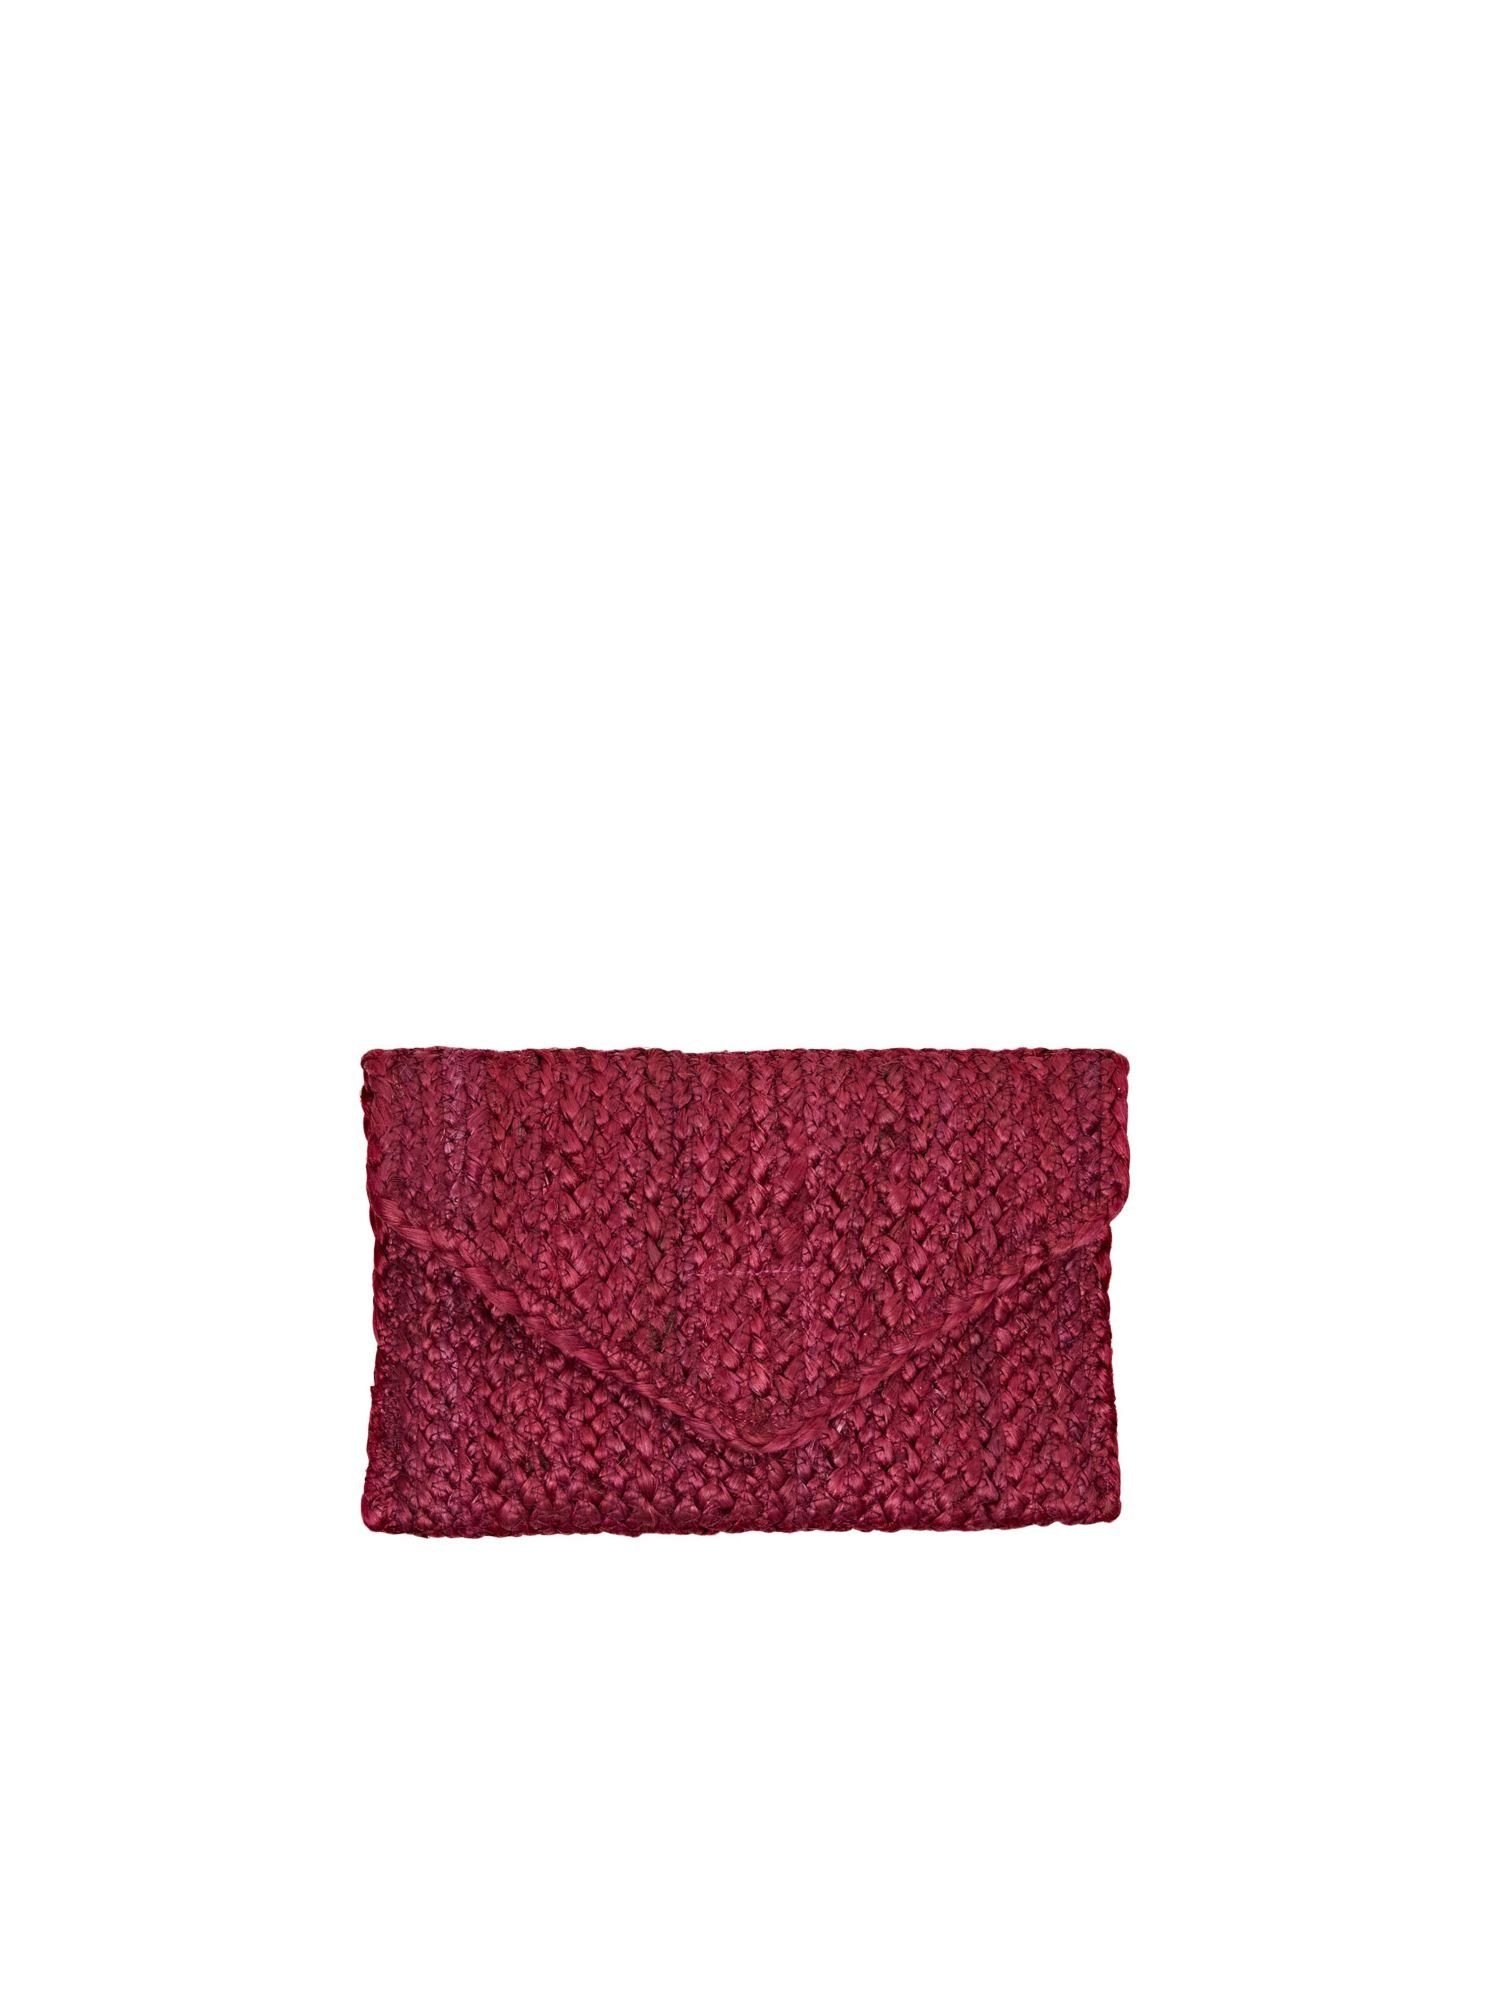 Esprit Schultertasche Clutch in Envelope-Design aus gewebtem Bast